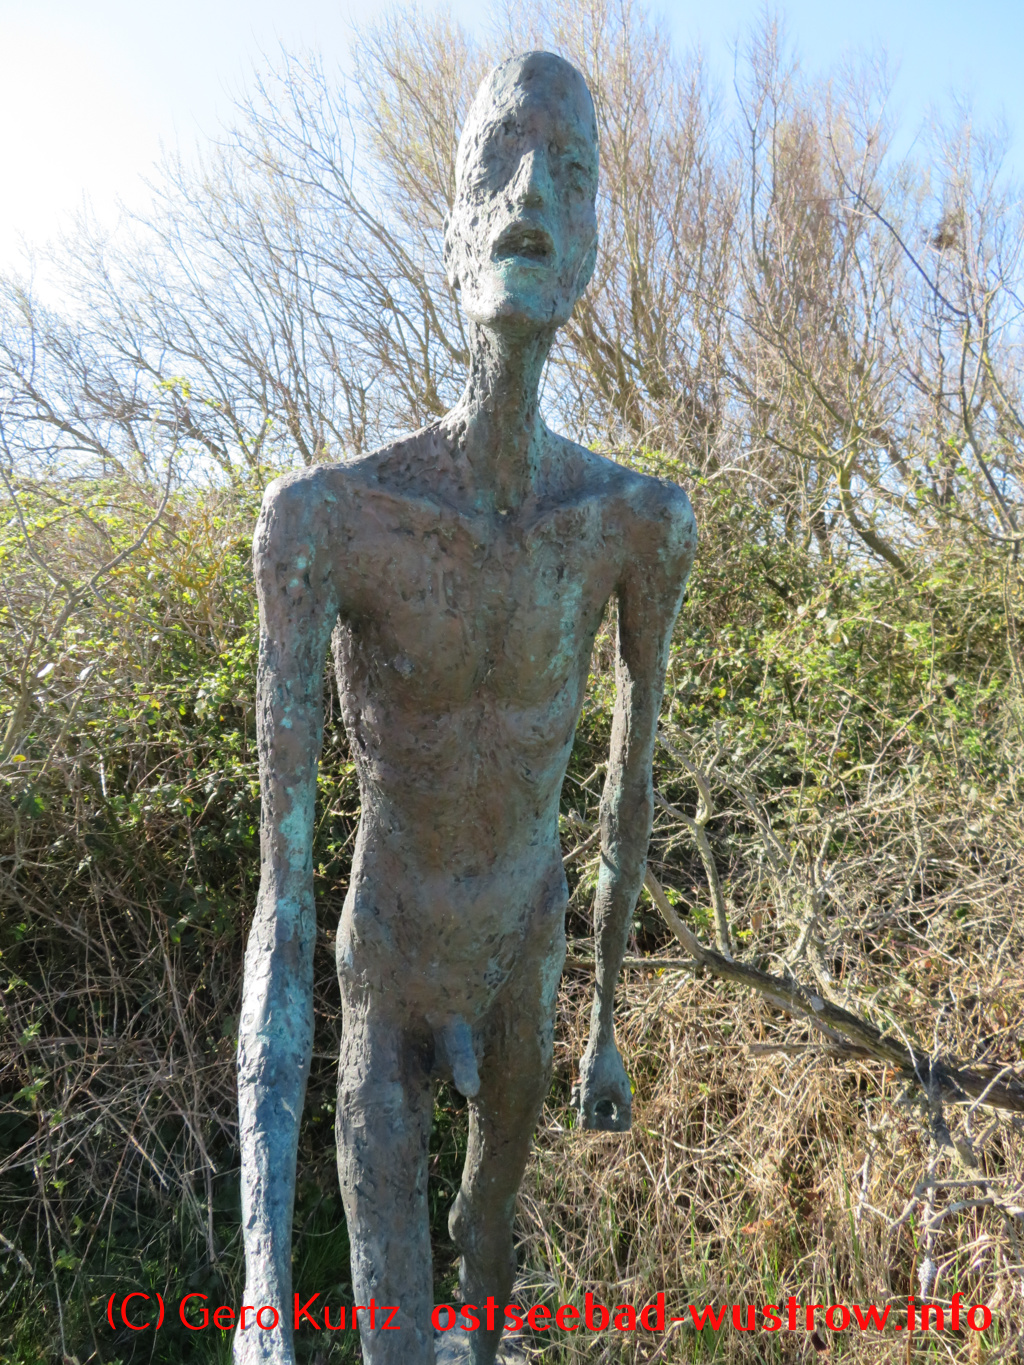 Skulpturenpark Wustrow - Dünner Mann aus Bronze